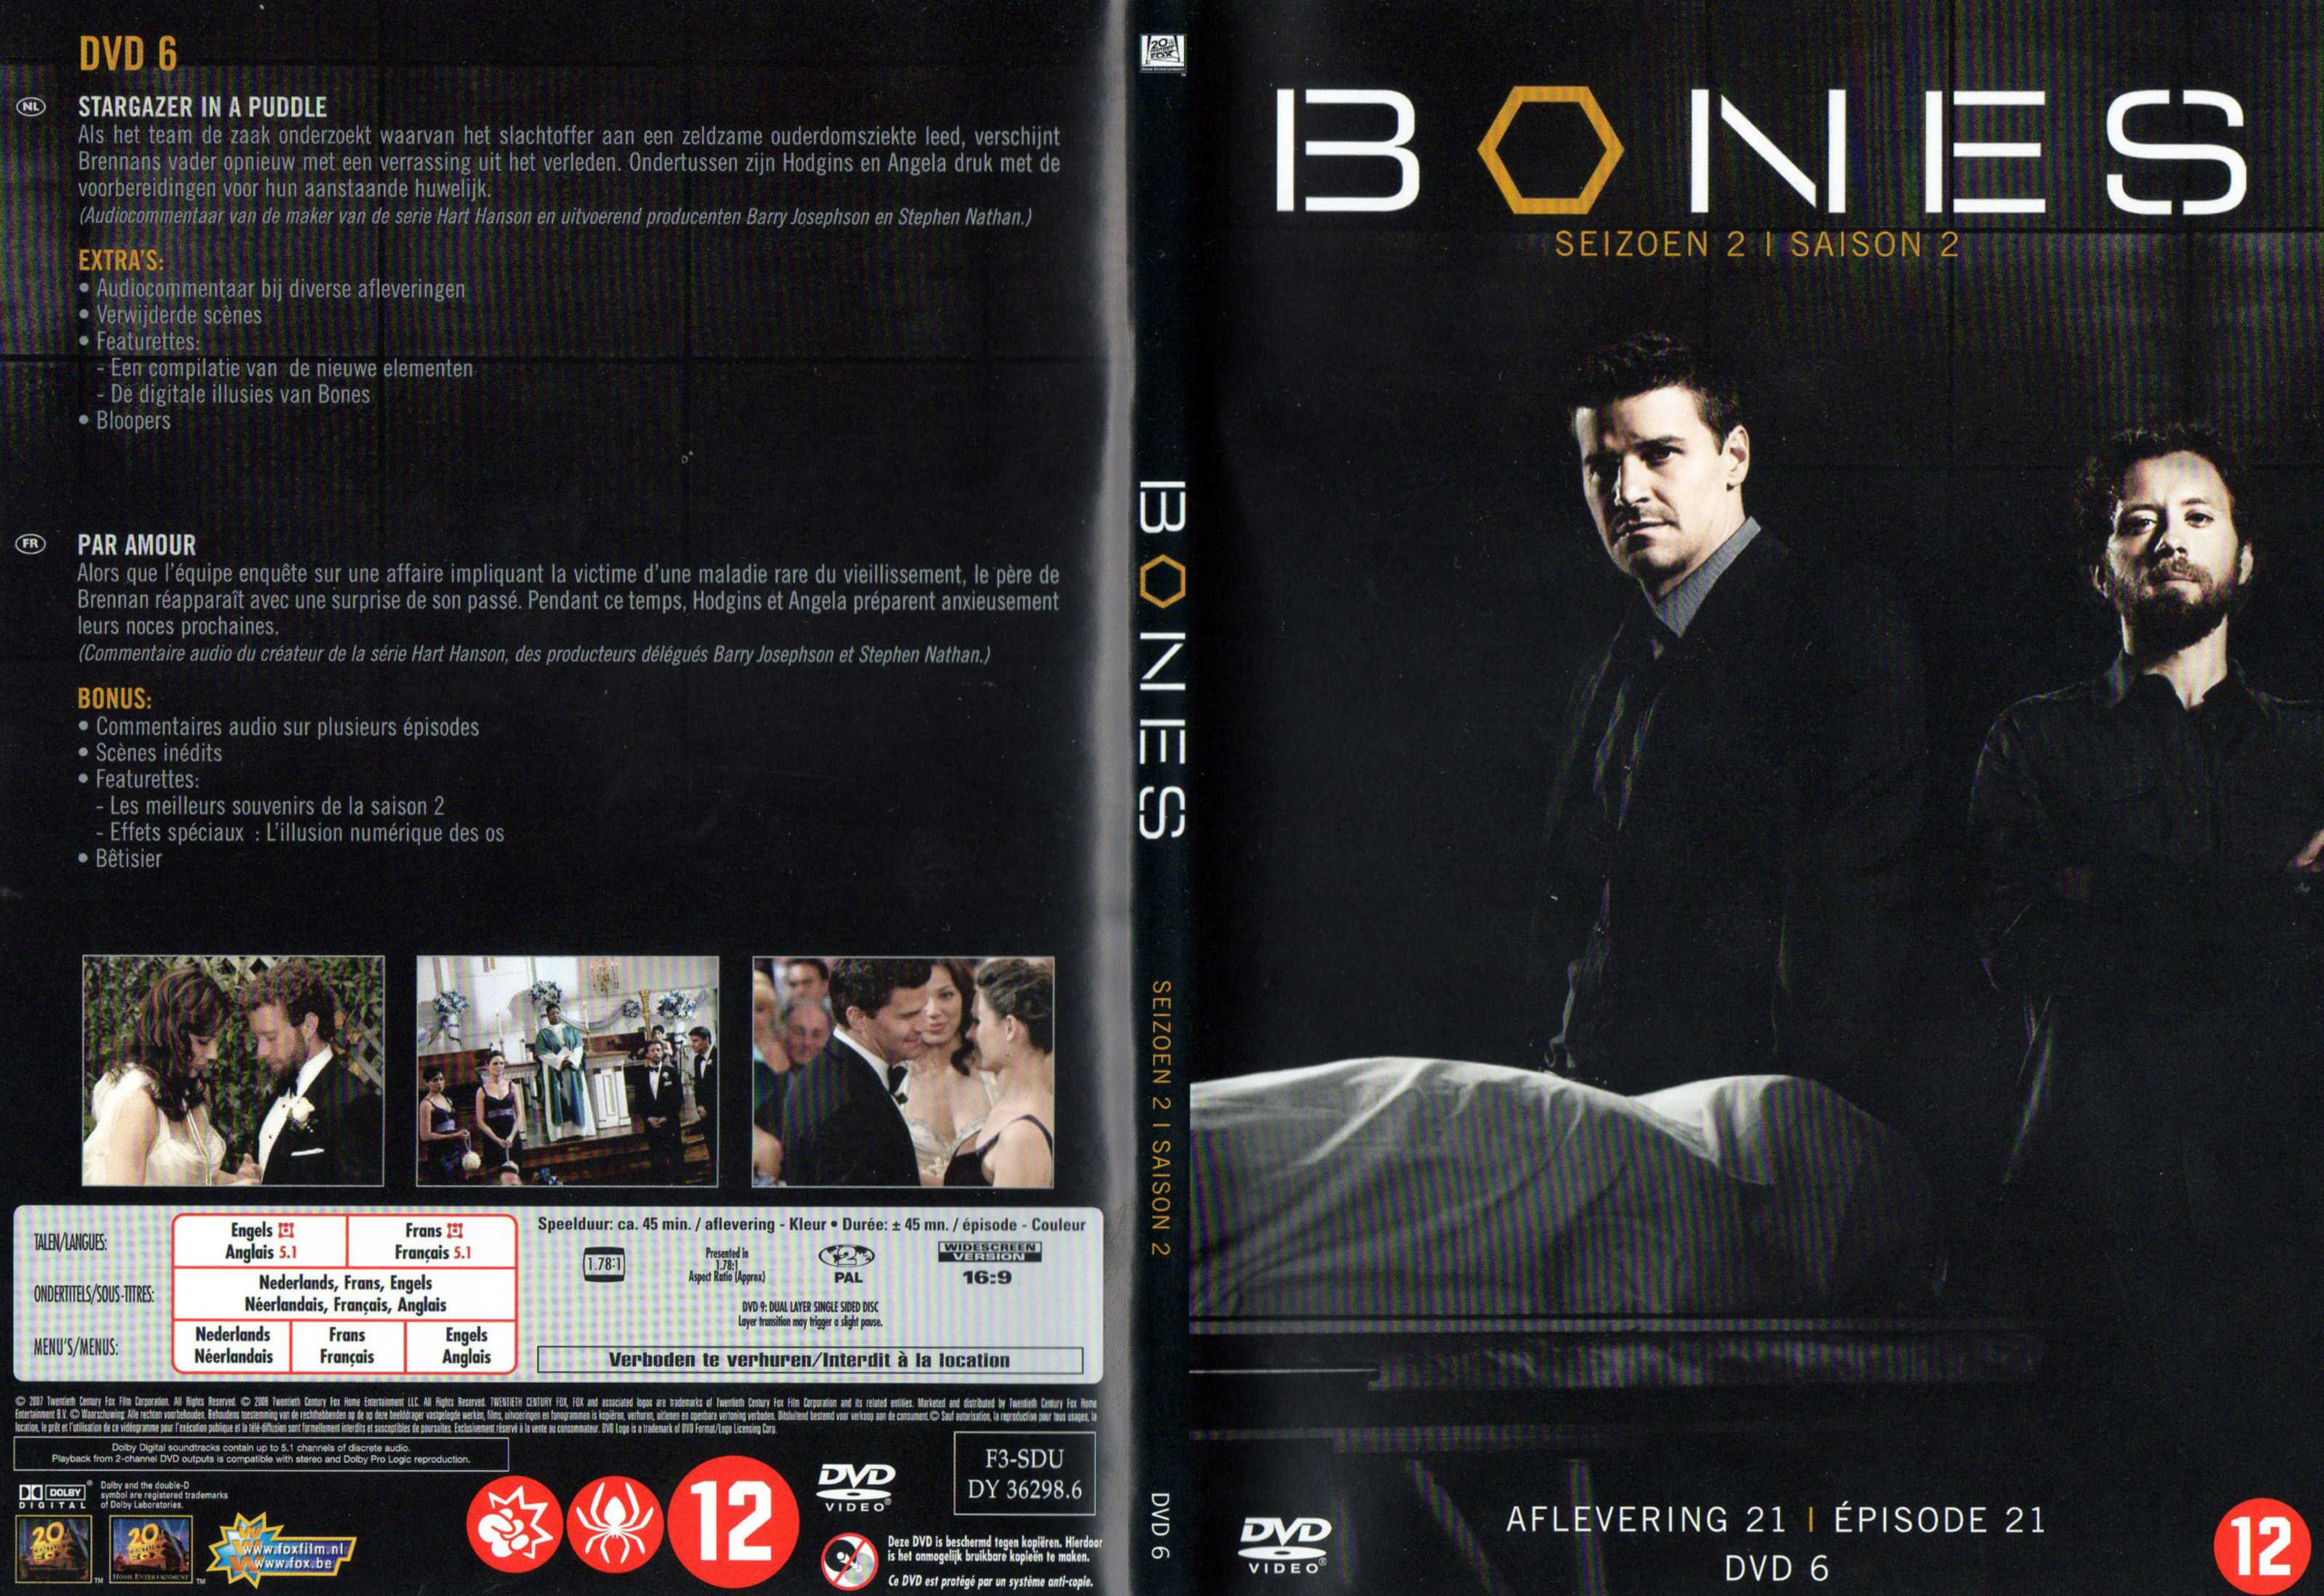 Jaquette DVD Bones Saison 2 DVD 6 v2